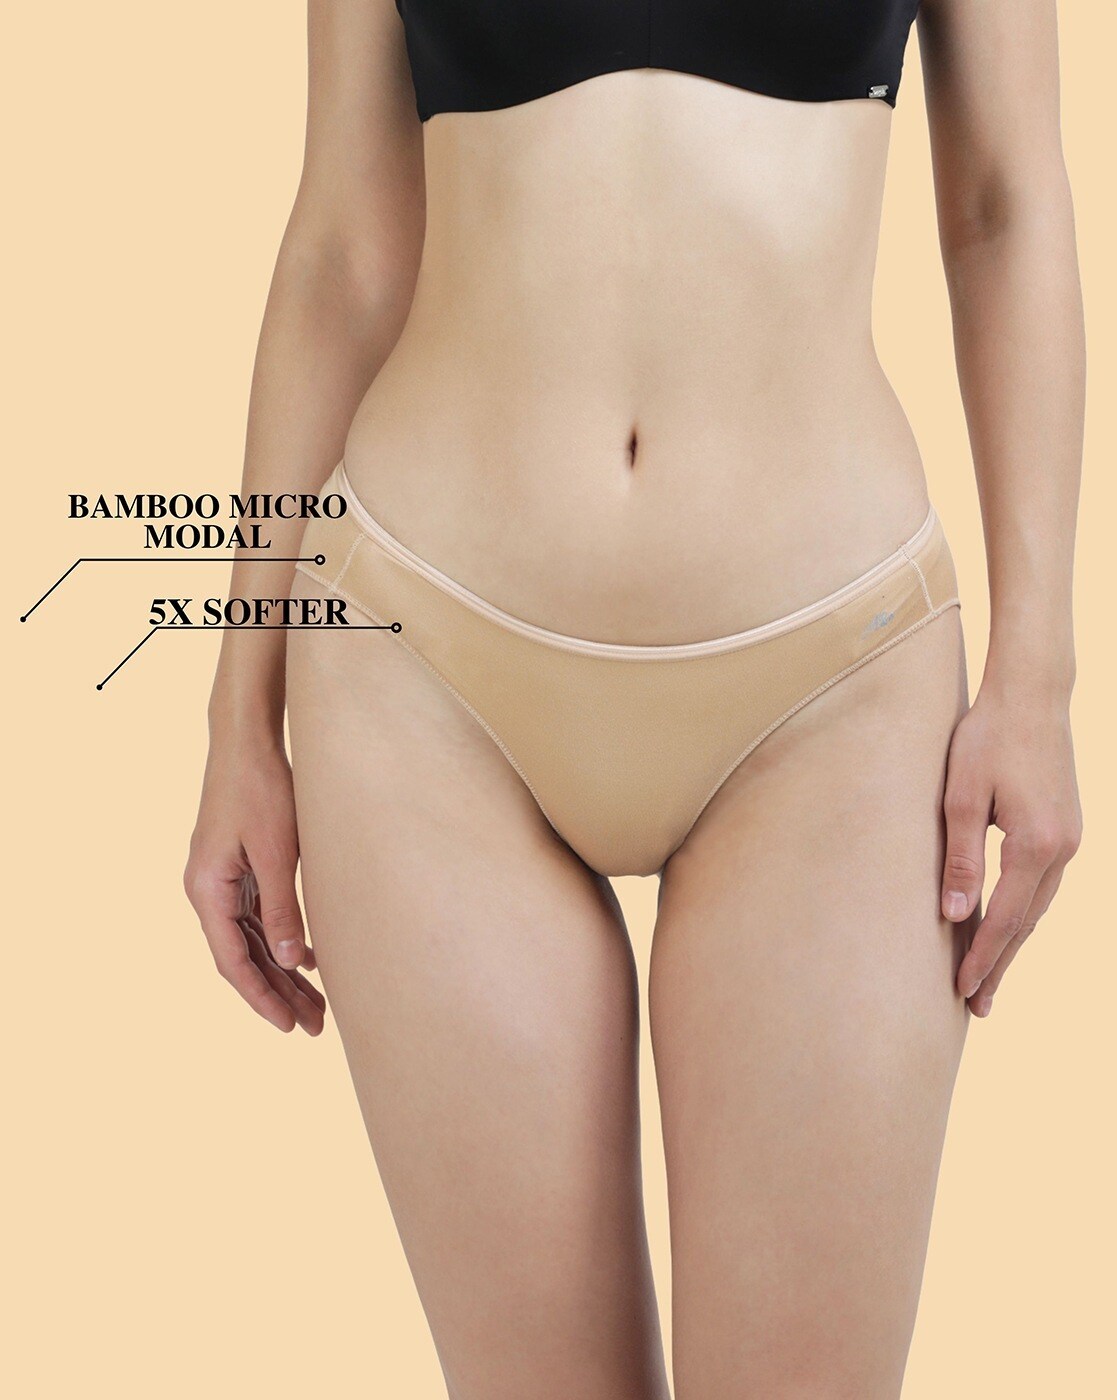 Plain Women's Bamboo Micro Modal Bikini Panty at Rs 135/piece in Bengaluru